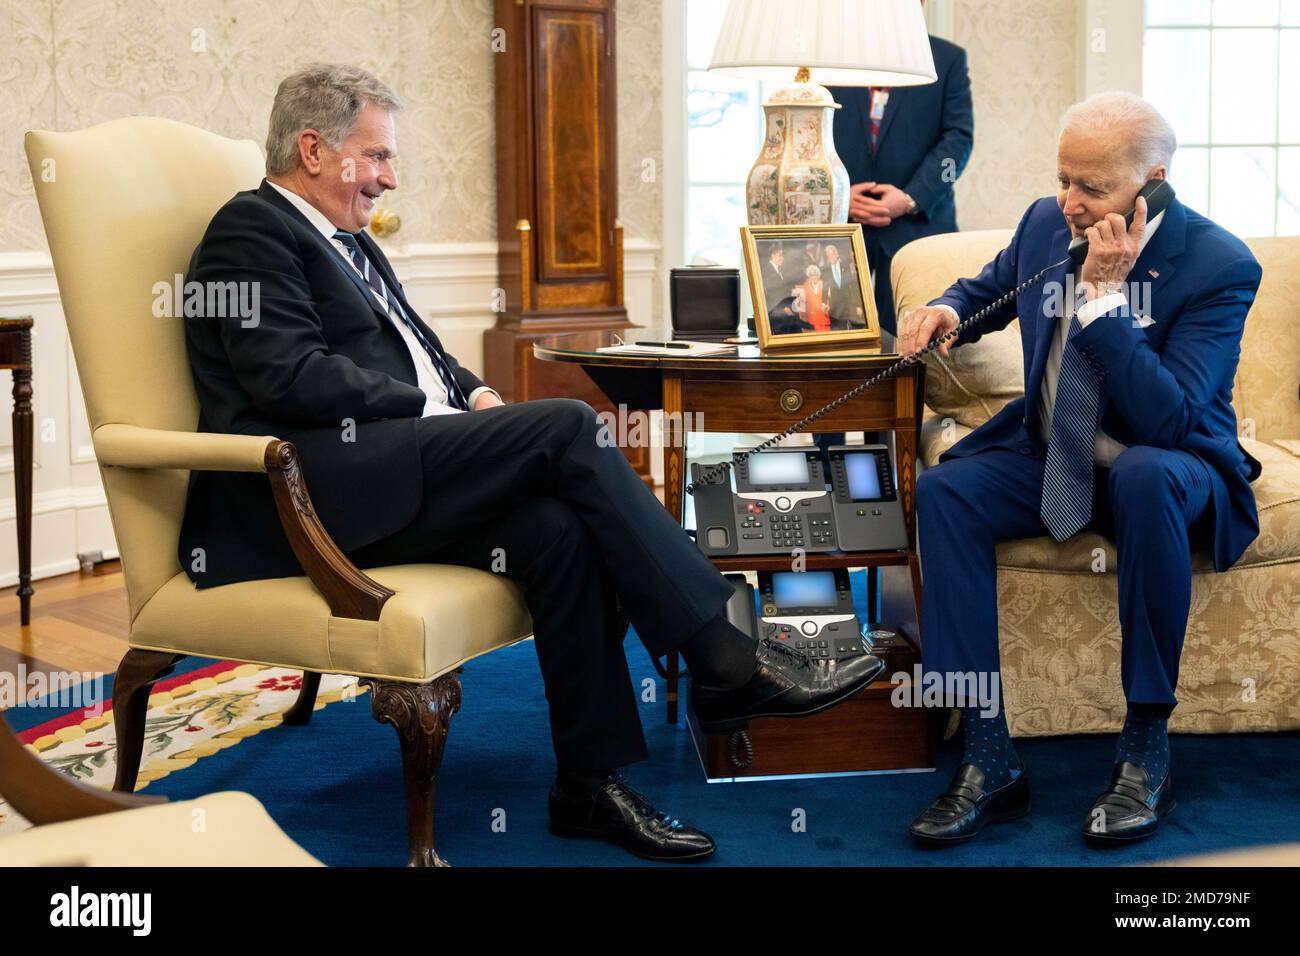 Bericht: Präsident Joe Biden und der finnische Präsident Sauli Niinistö sprechen am Freitag, den 4. März 2022, im Oval Office mit der schwedischen Premierministerin Magdalena Andersson am Telefon Stockfoto